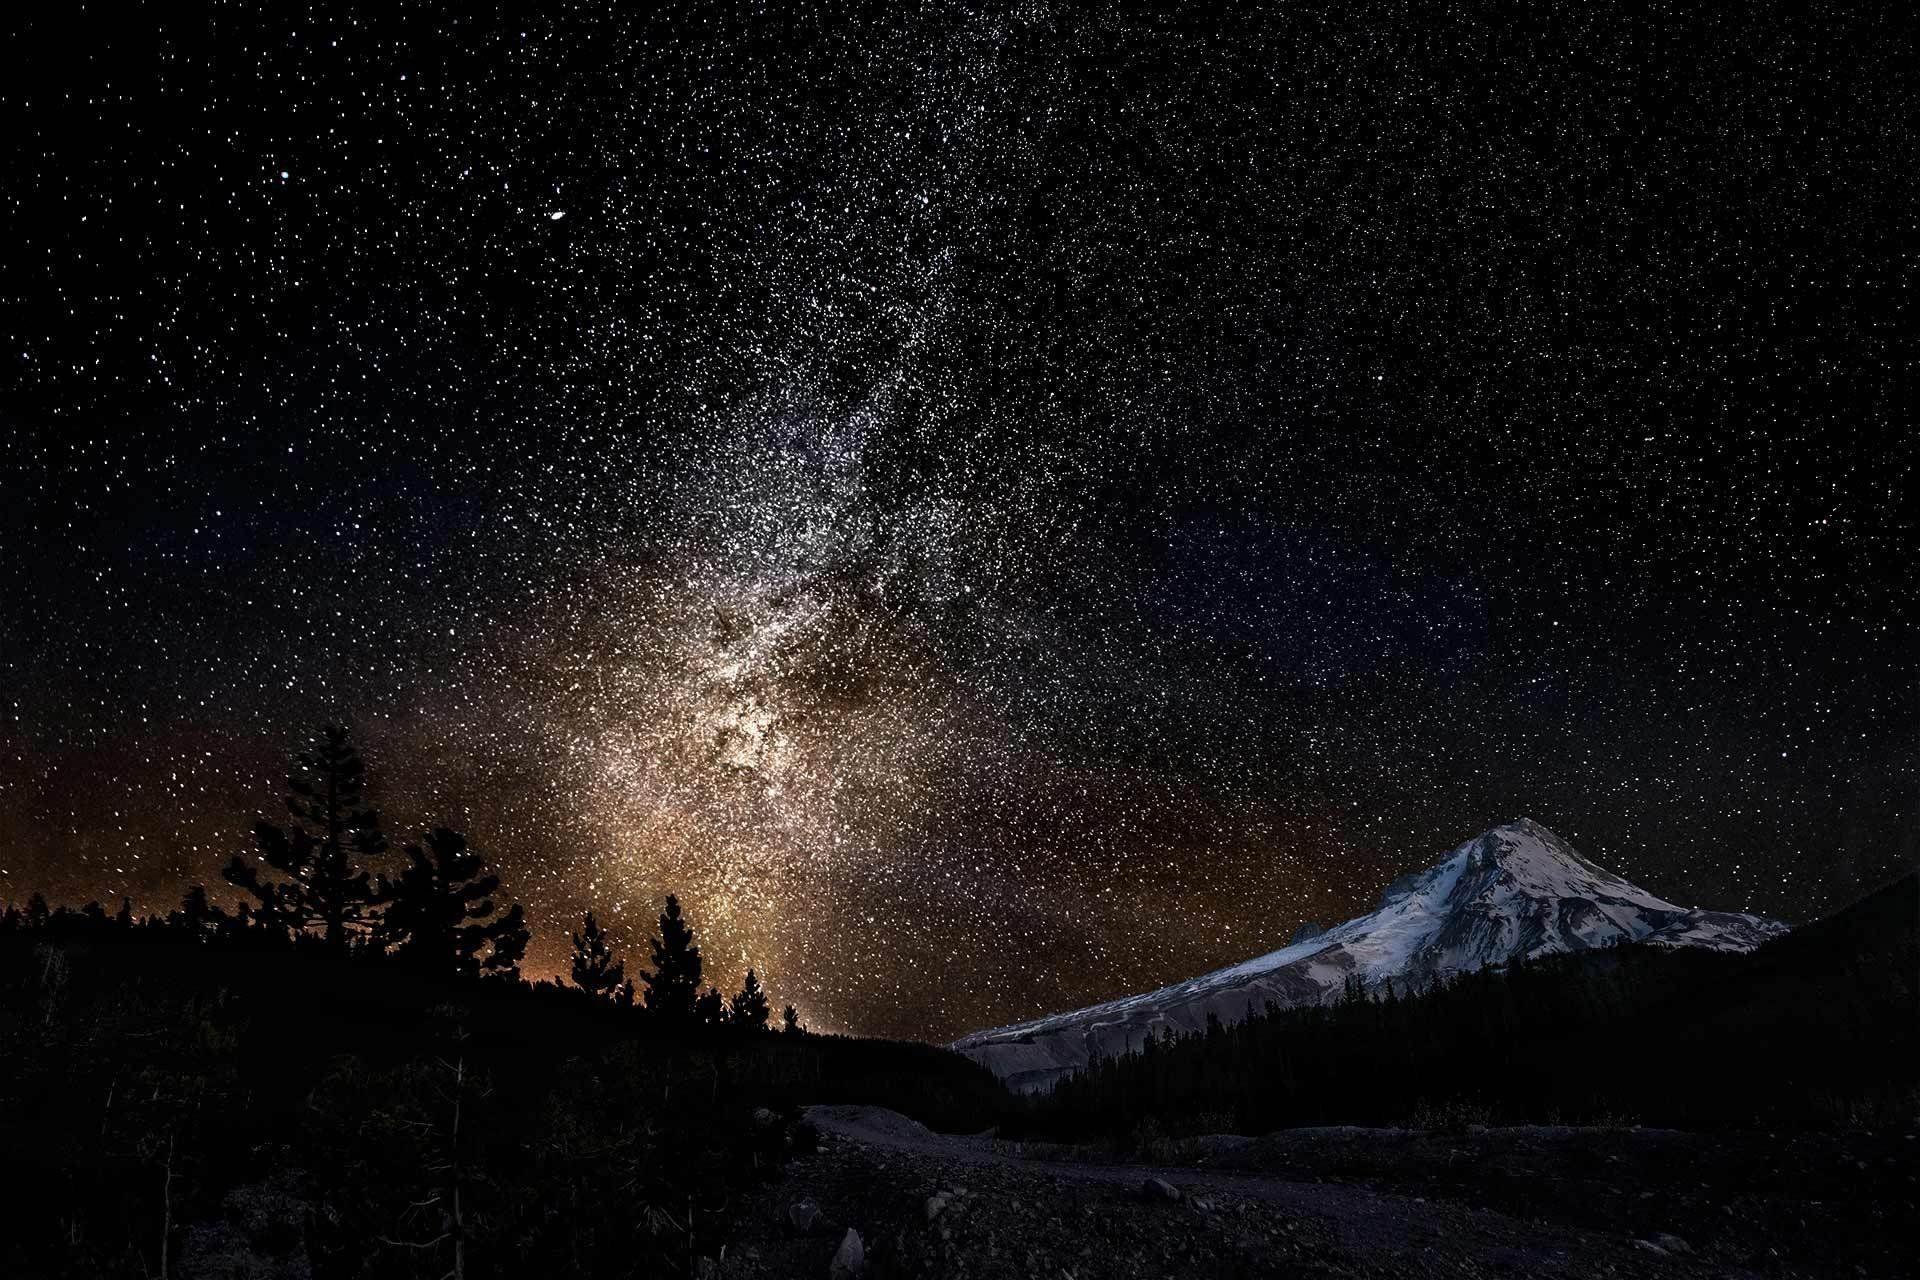 Mountain Landscape Clouds Night Sky Stars Scenery 4K Wallpaper #4.762